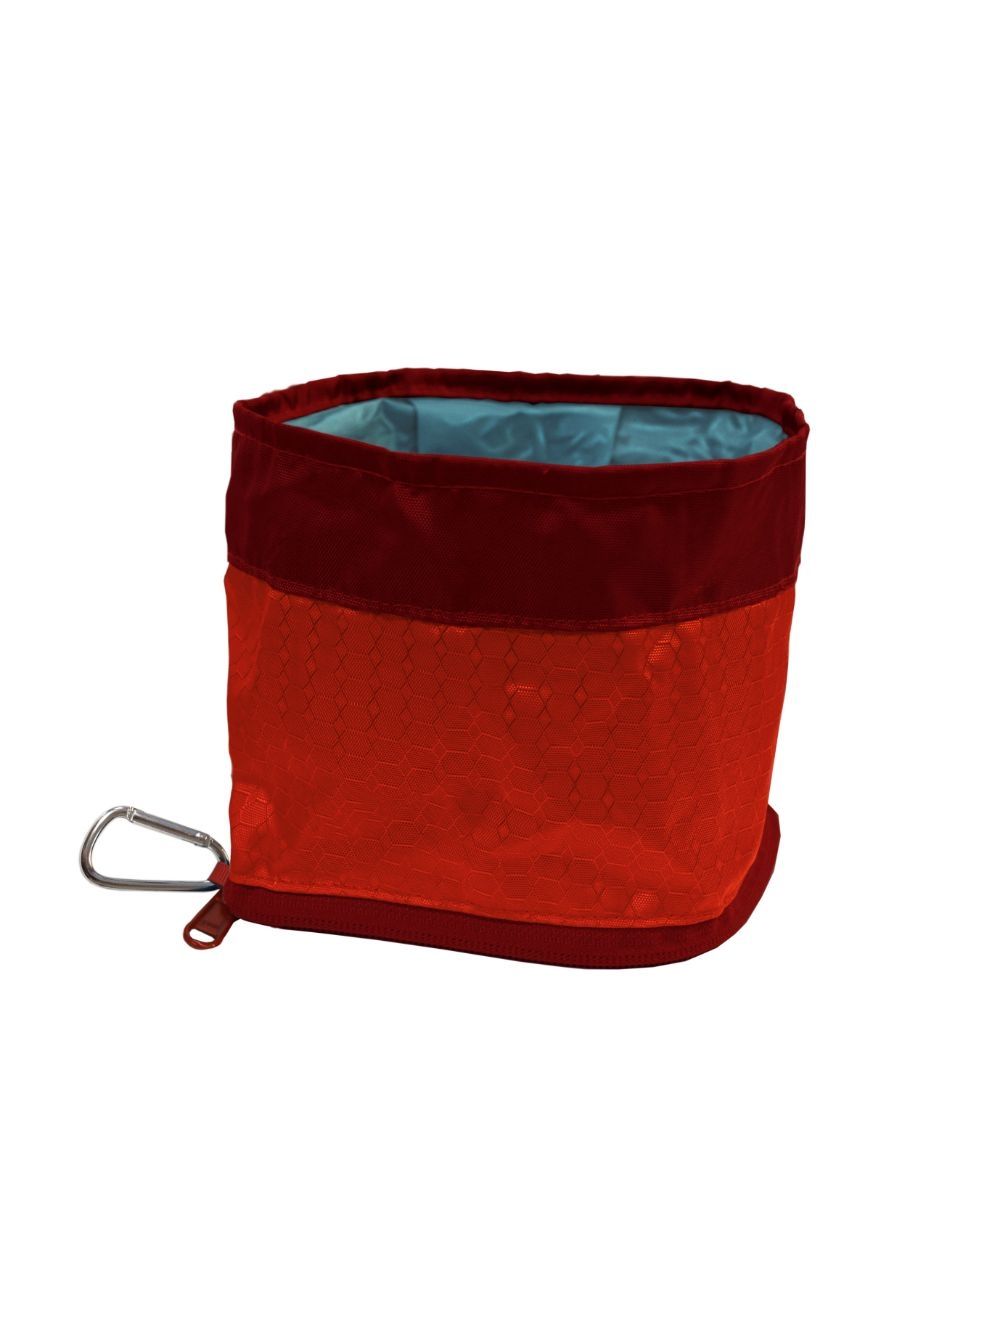 KURGO - Zippy Bowl in Red - (81314601559)